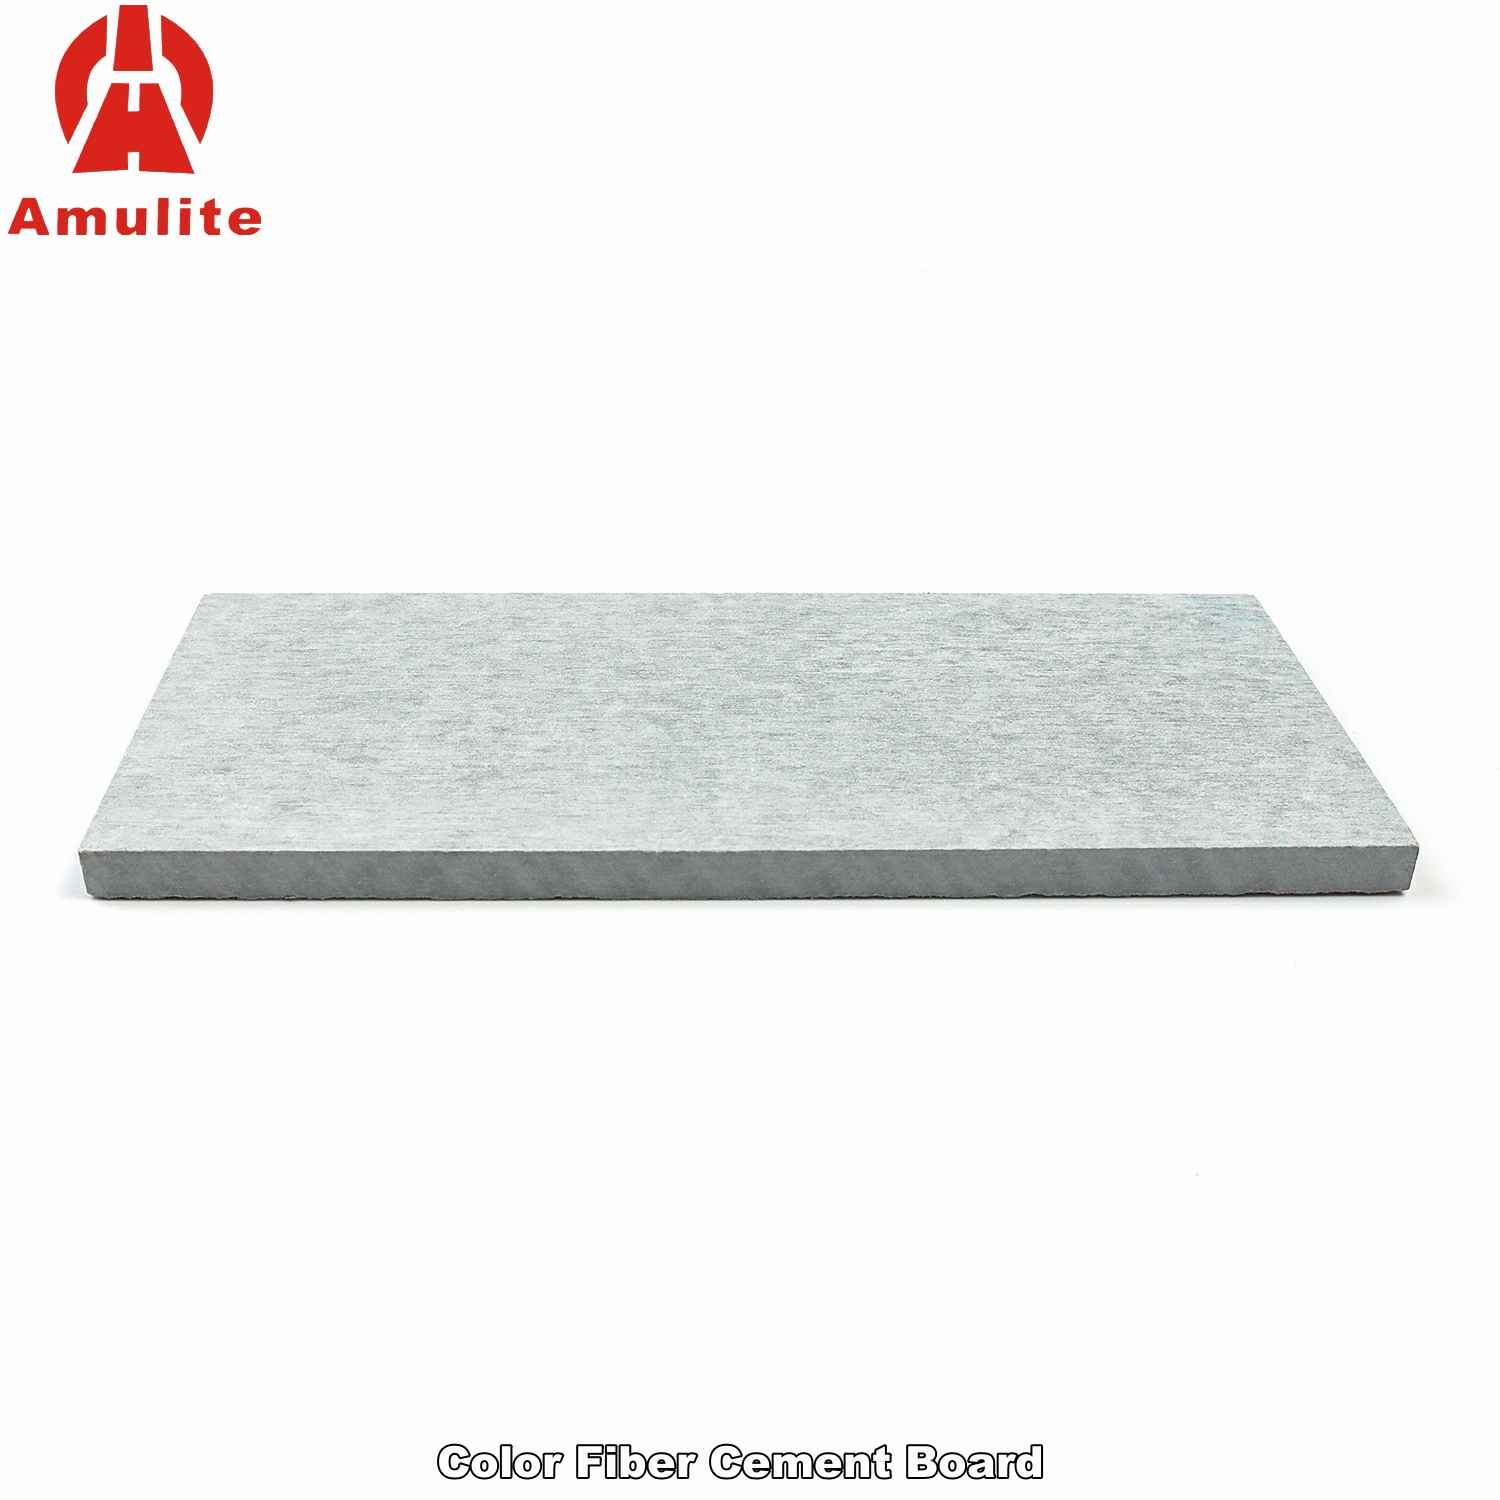 Color Fiber Cement Board (17)